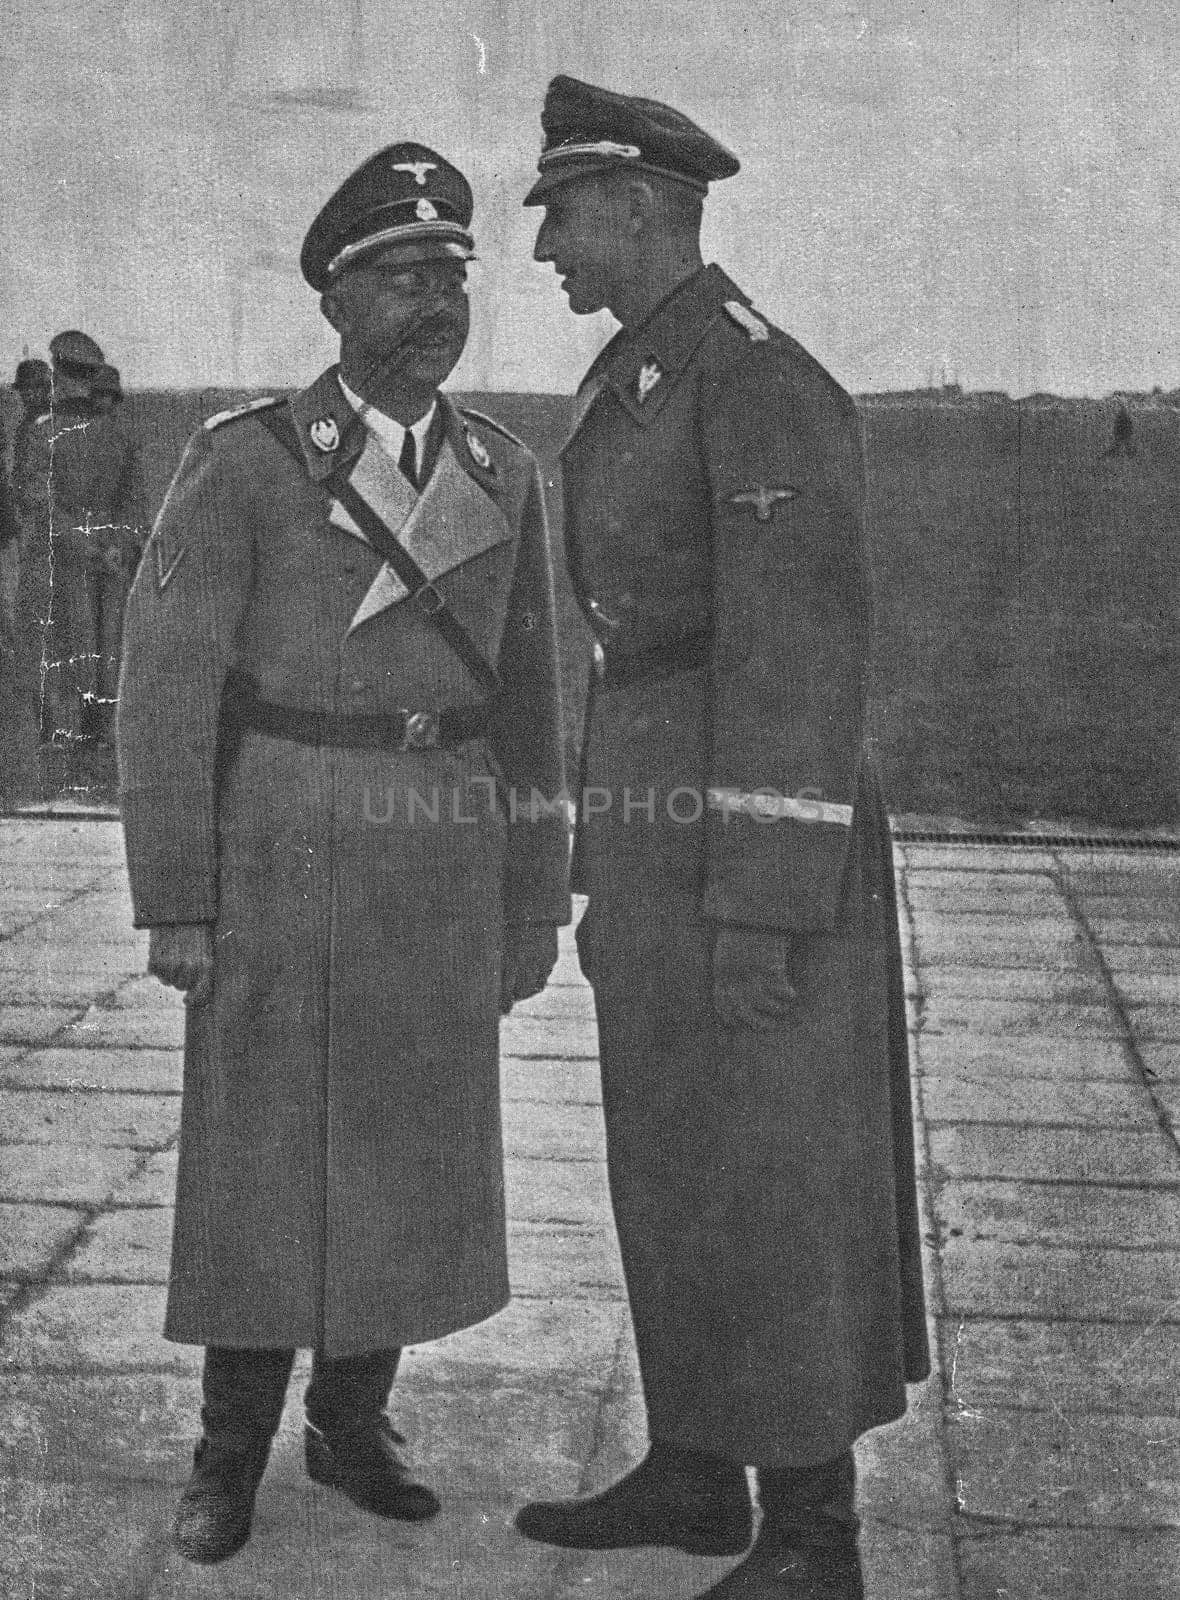 POLAND - 1940s: Heinrich Himmler (left) and Reinhard Heydrich during war campaign in Poland.